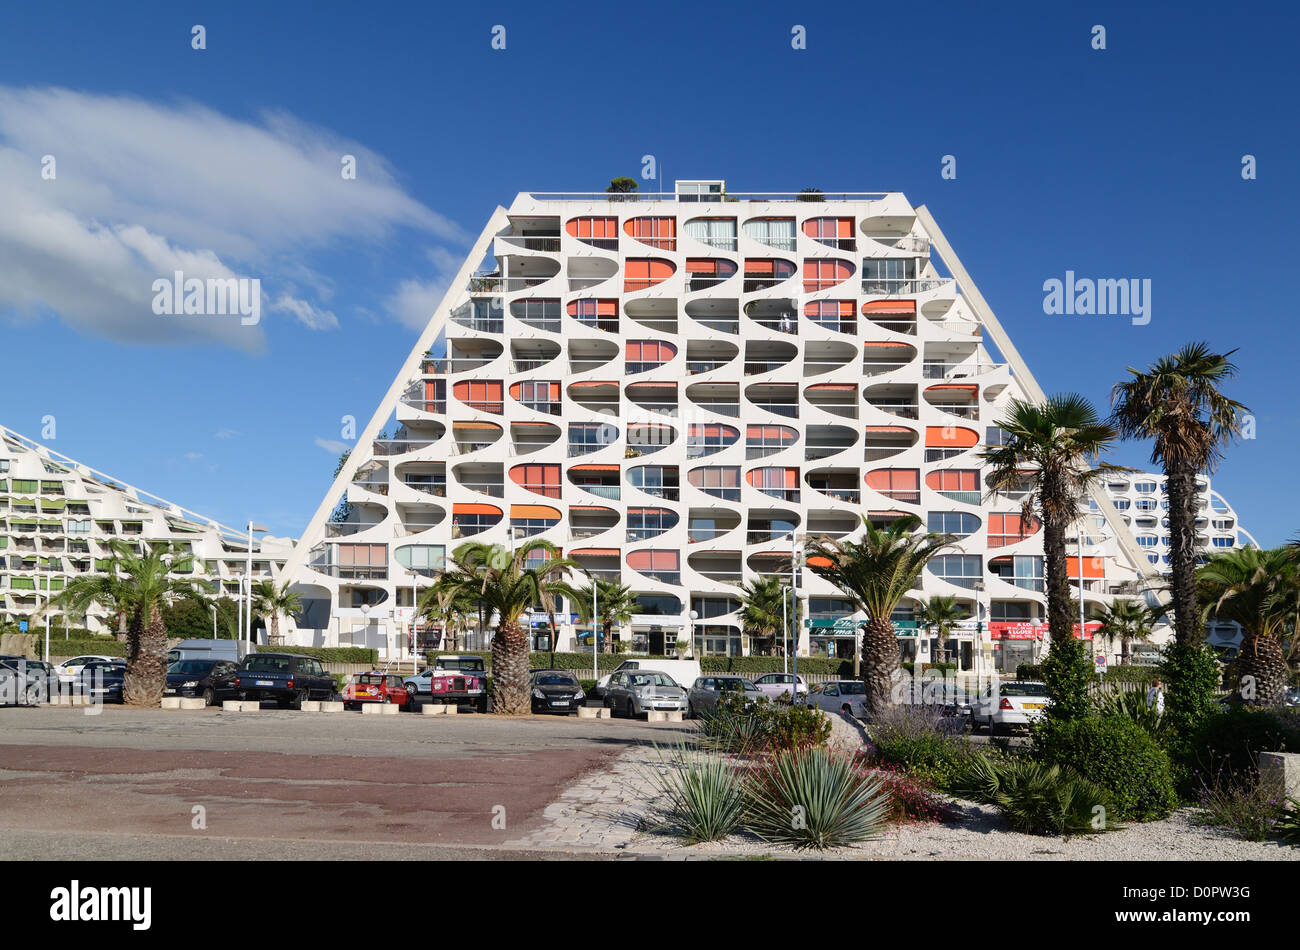 Eden Building (1974) Appartement en forme de Pyramide par Jean Balladur dans la ville ou station balnéaire de la Grande-Motte Hérault France Banque D'Images